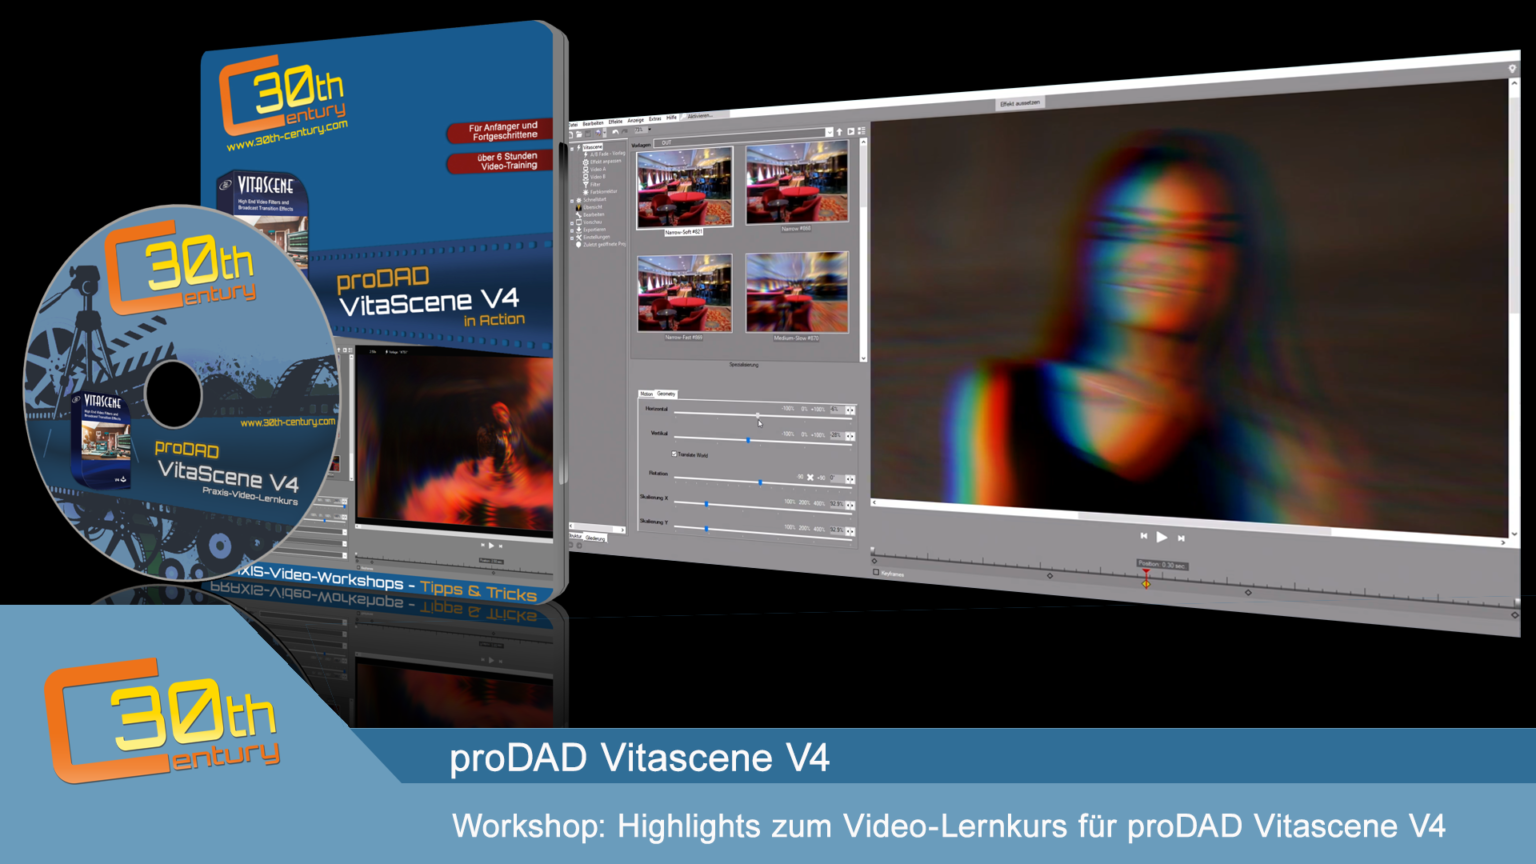 proDAD VitaScene 5.0.313 instal the new for mac